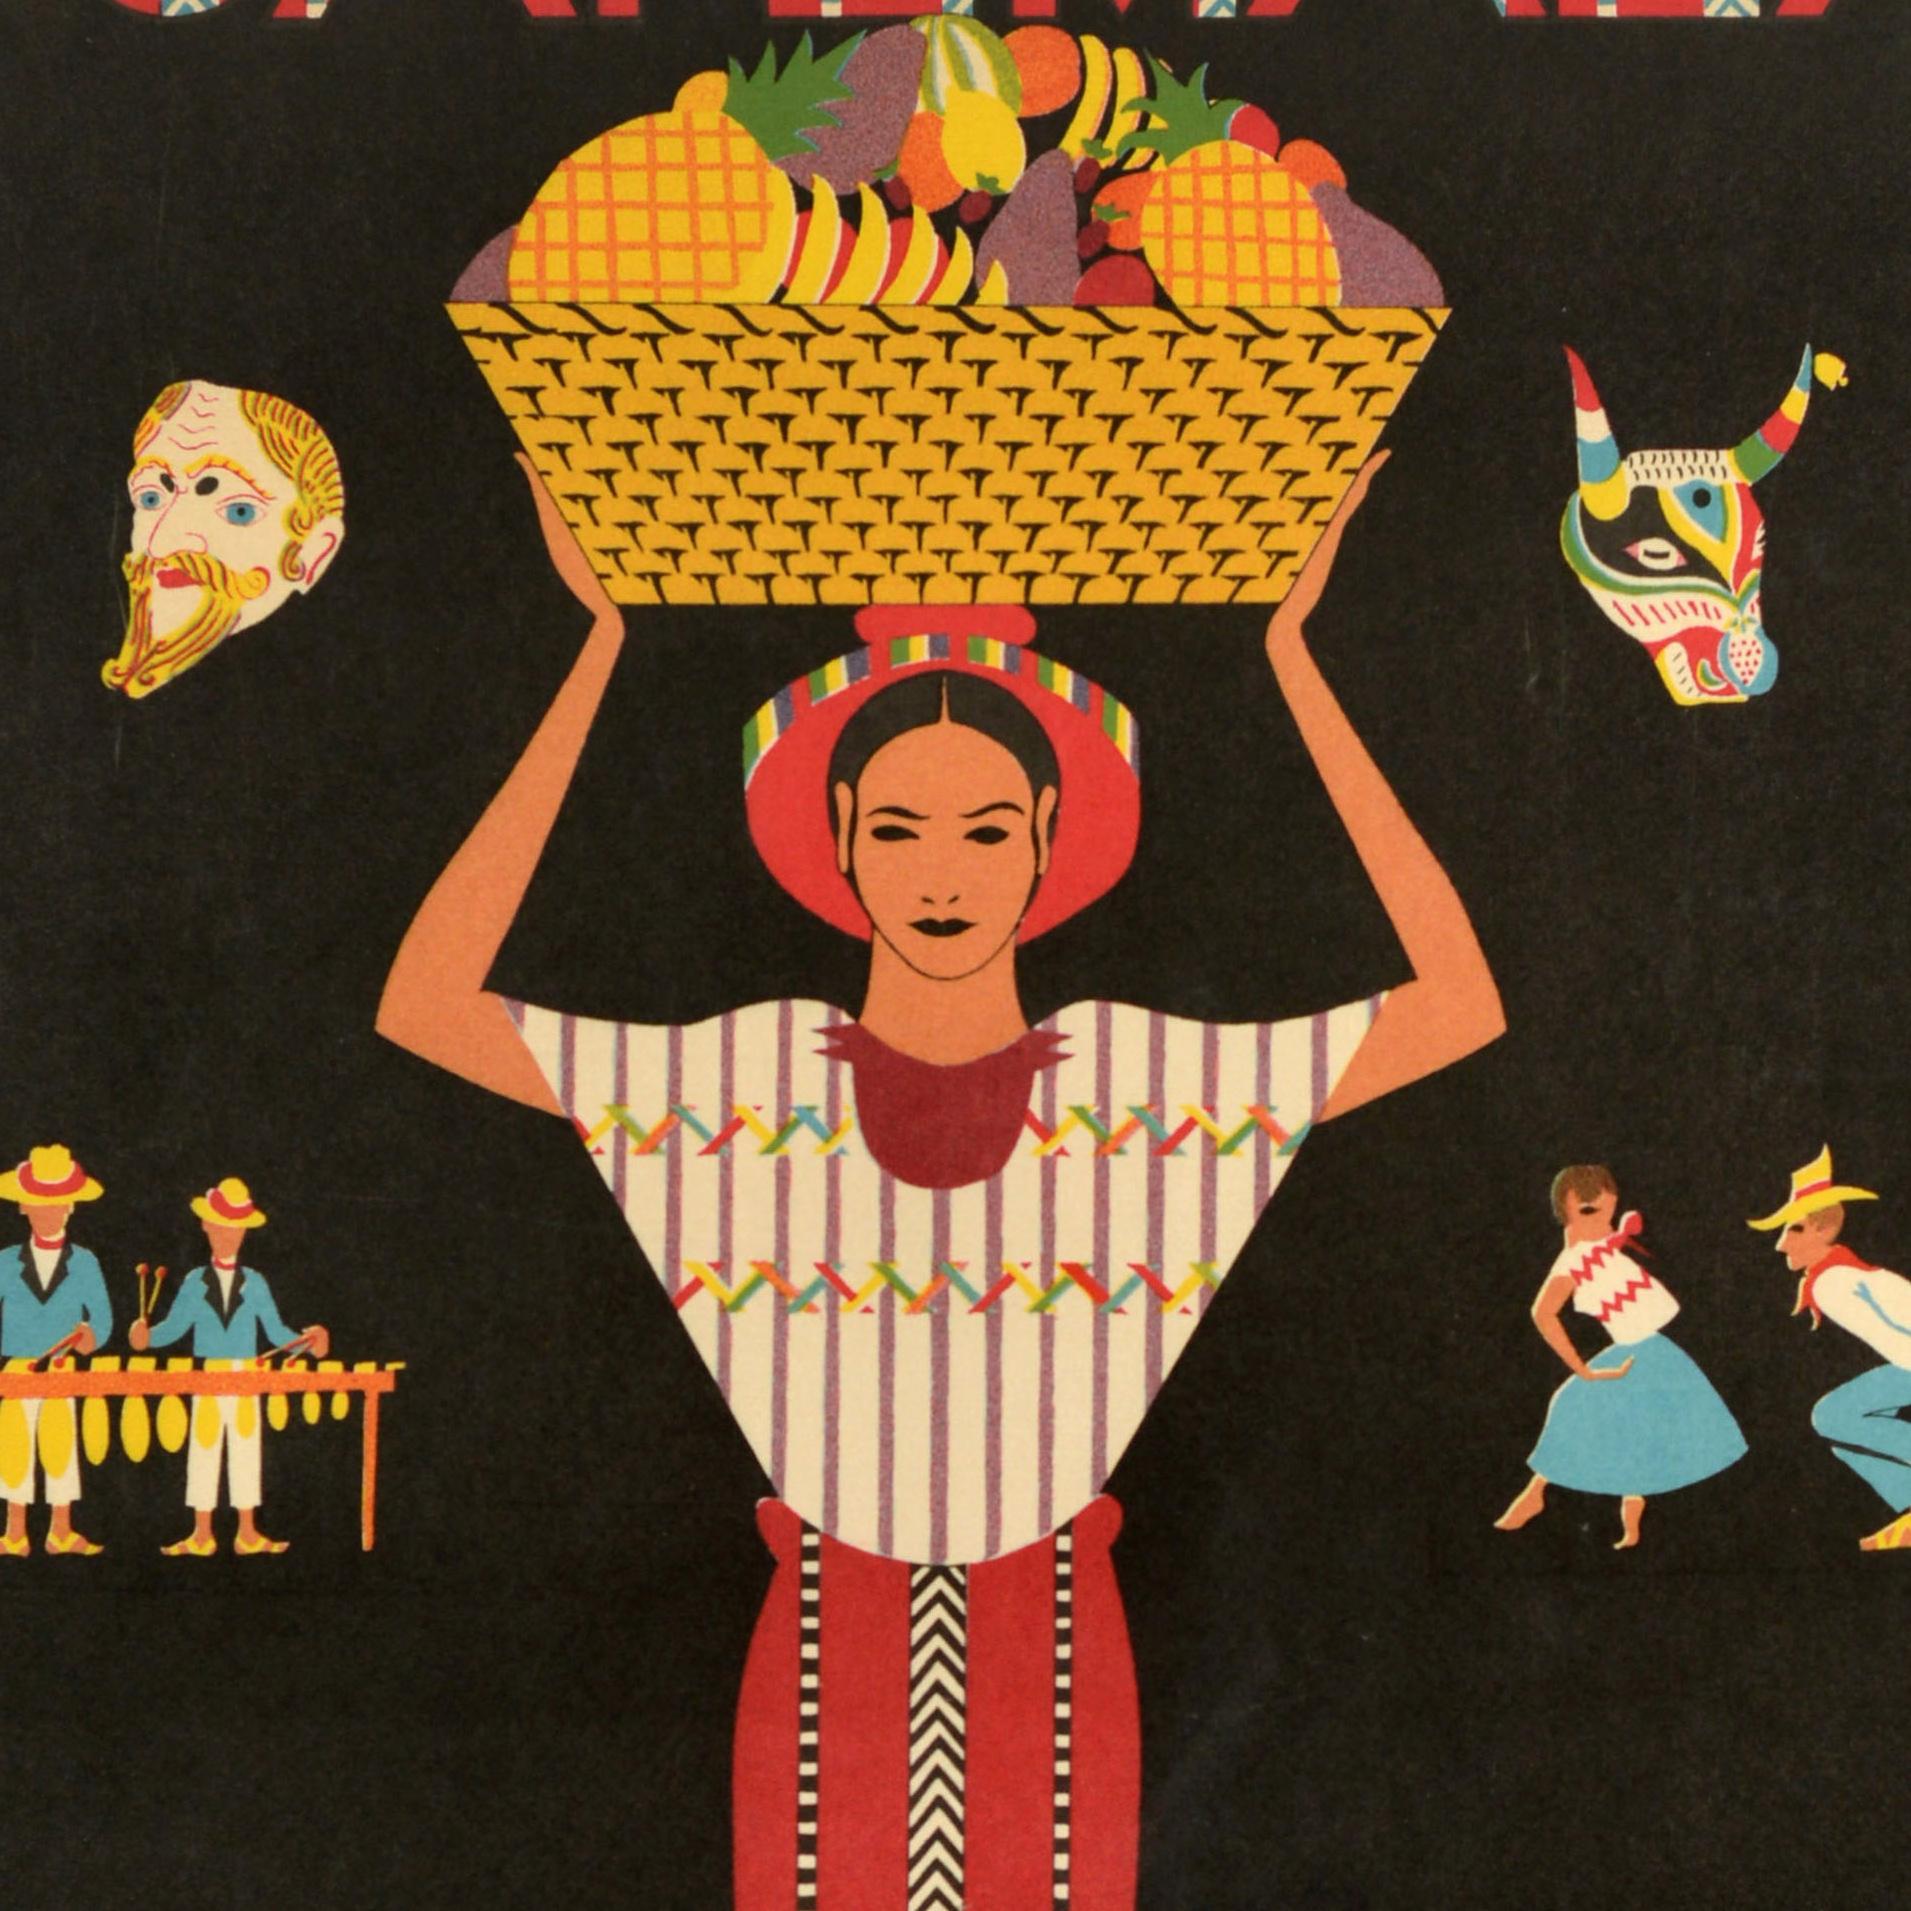 Affiche publicitaire originale de voyage - Guatemala Clark Tours - comportant une illustration colorée d'une dame portant un panier de fruits sur son chapeau entourée d'images plus petites représentant des personnes jouant de la musique et ramant